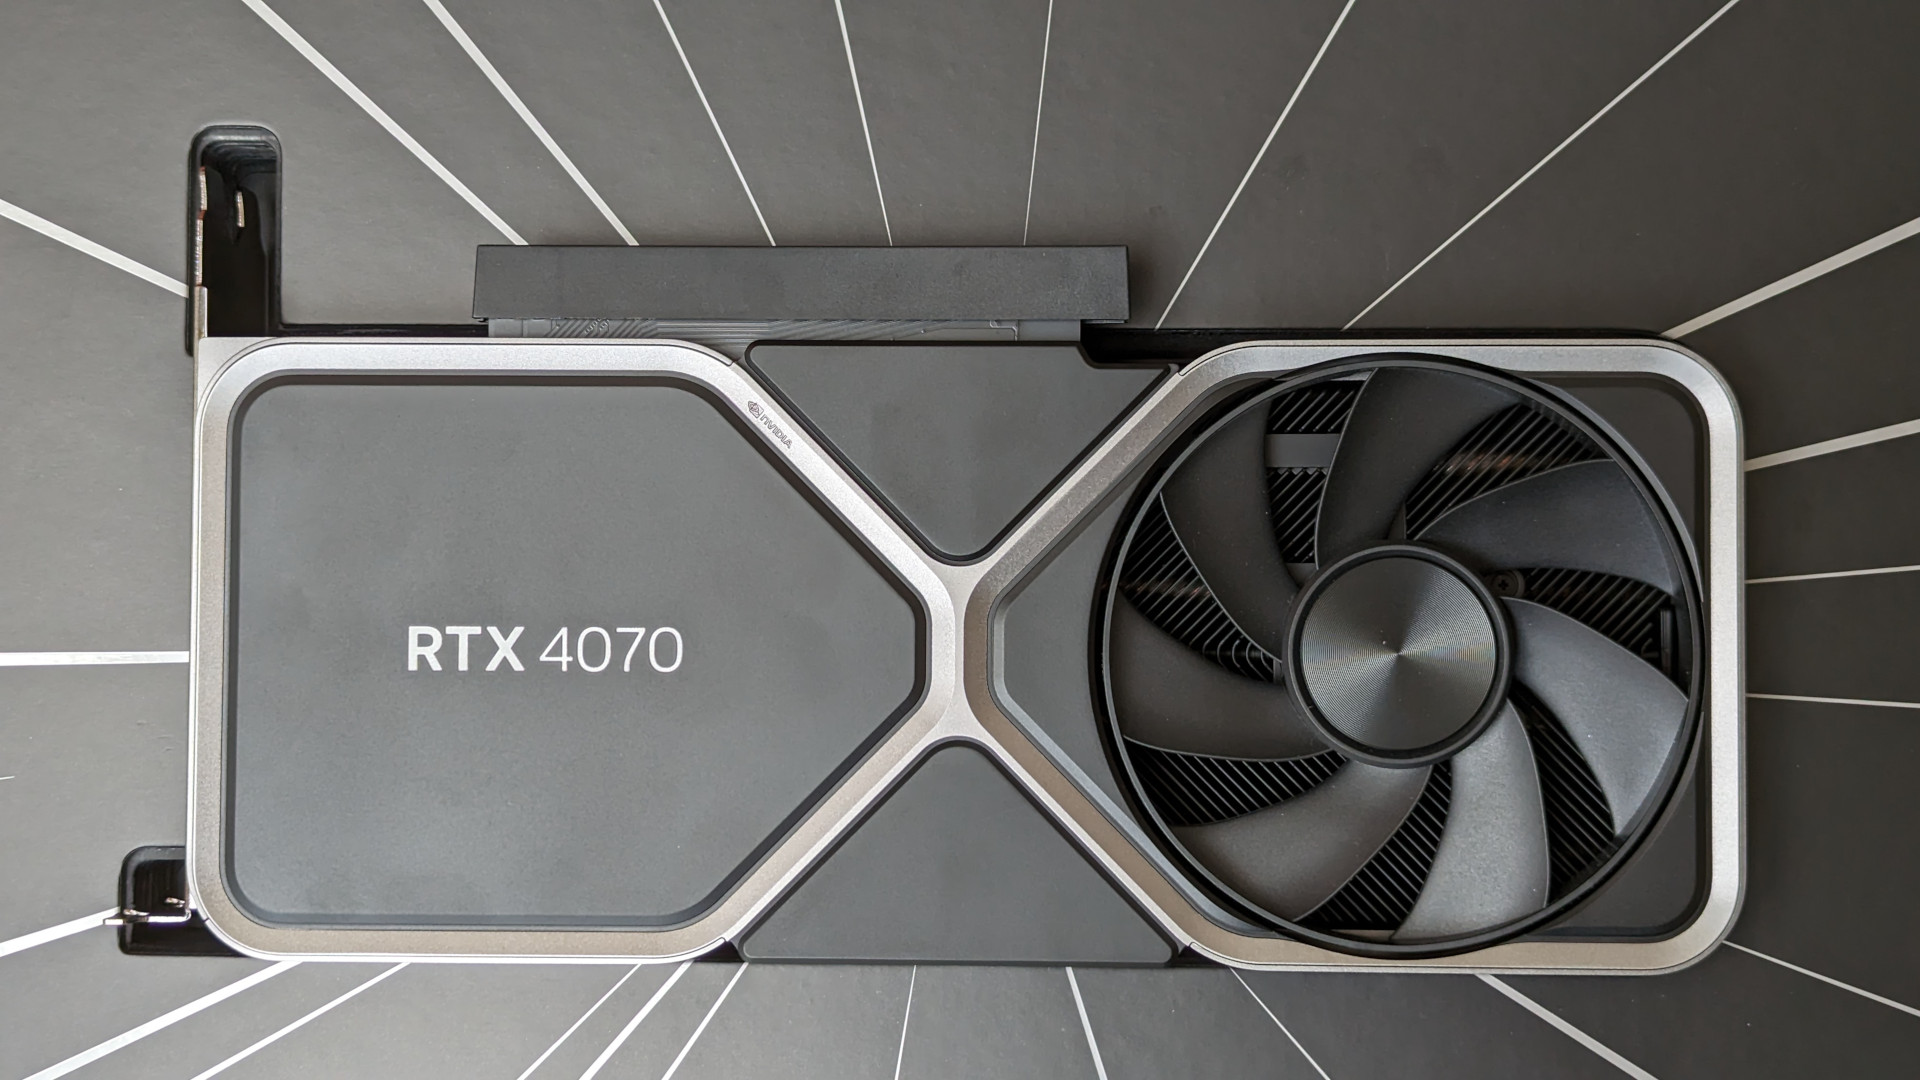 รีวิว Nvidia GeForce RTX 4070: การ์ดกราฟิกผู้ก่อตั้ง Founders Edition วางอยู่ในบรรจุภัณฑ์ค้าปลีกที่ล้อมรอบไปด้วย Silver Streaks